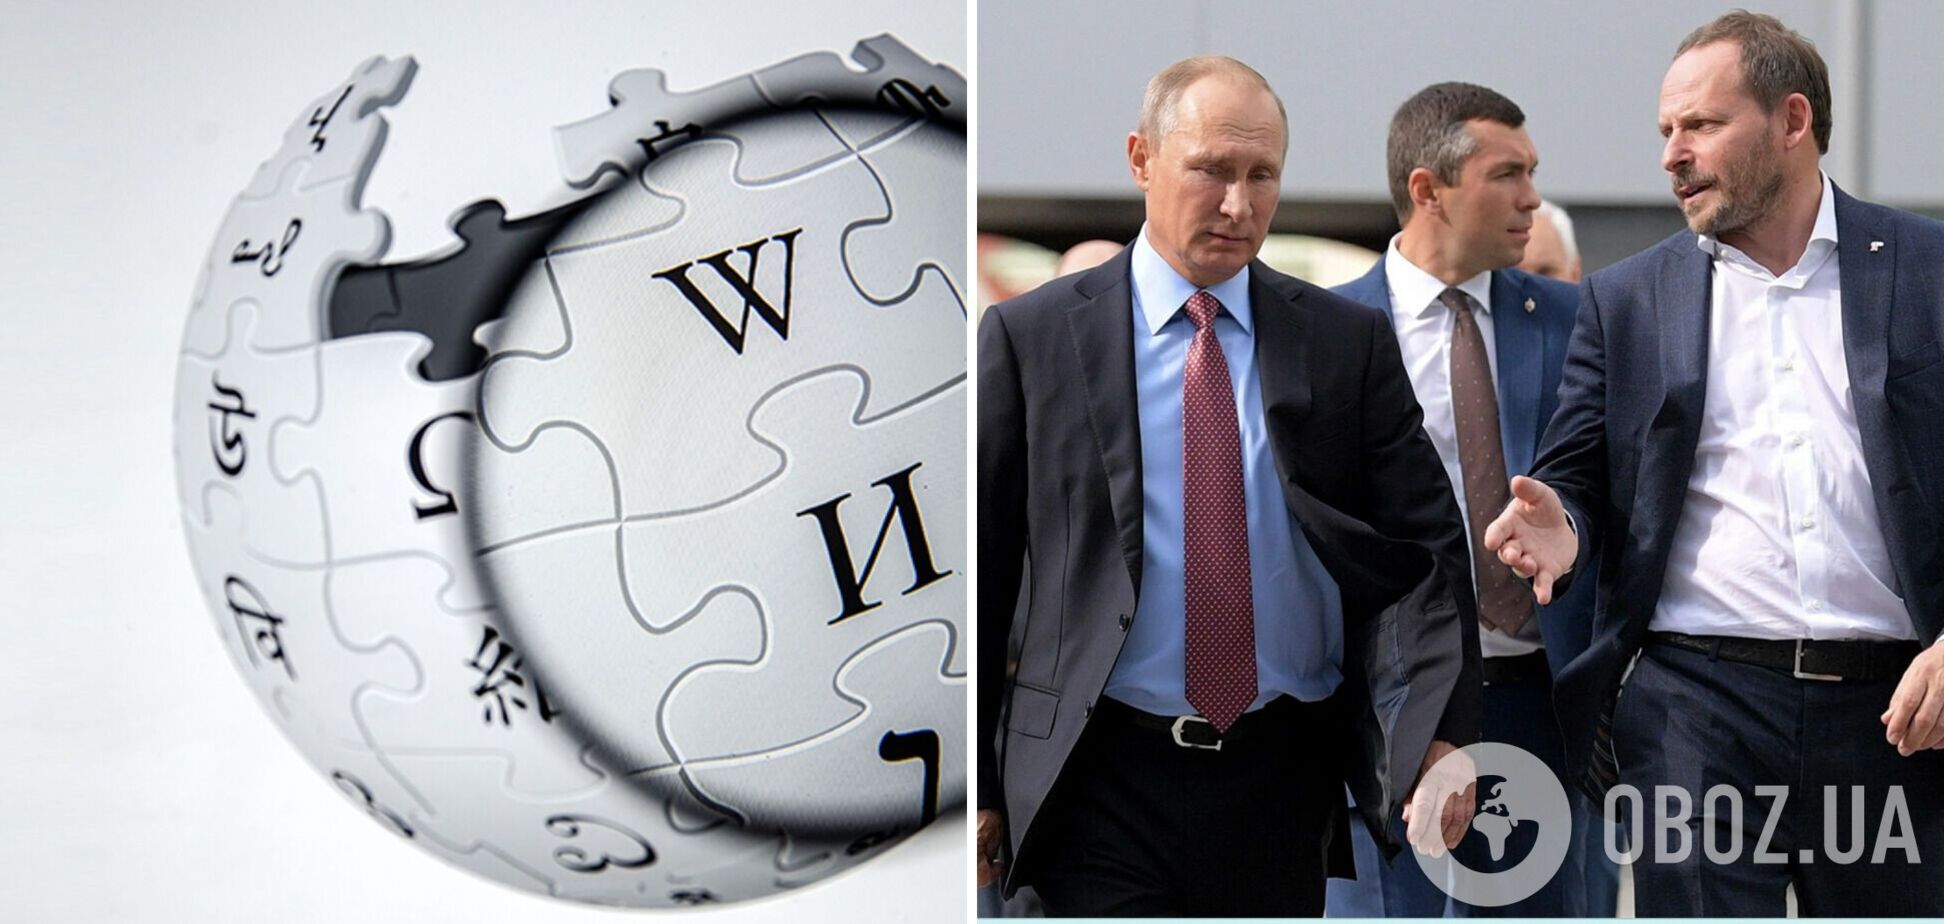 Російська 'еліта' зачищає у 'Вікіпедії' дані про санкції, зв'язки з Кремлем, майно і навіть громадянство РФ – ЗМІ